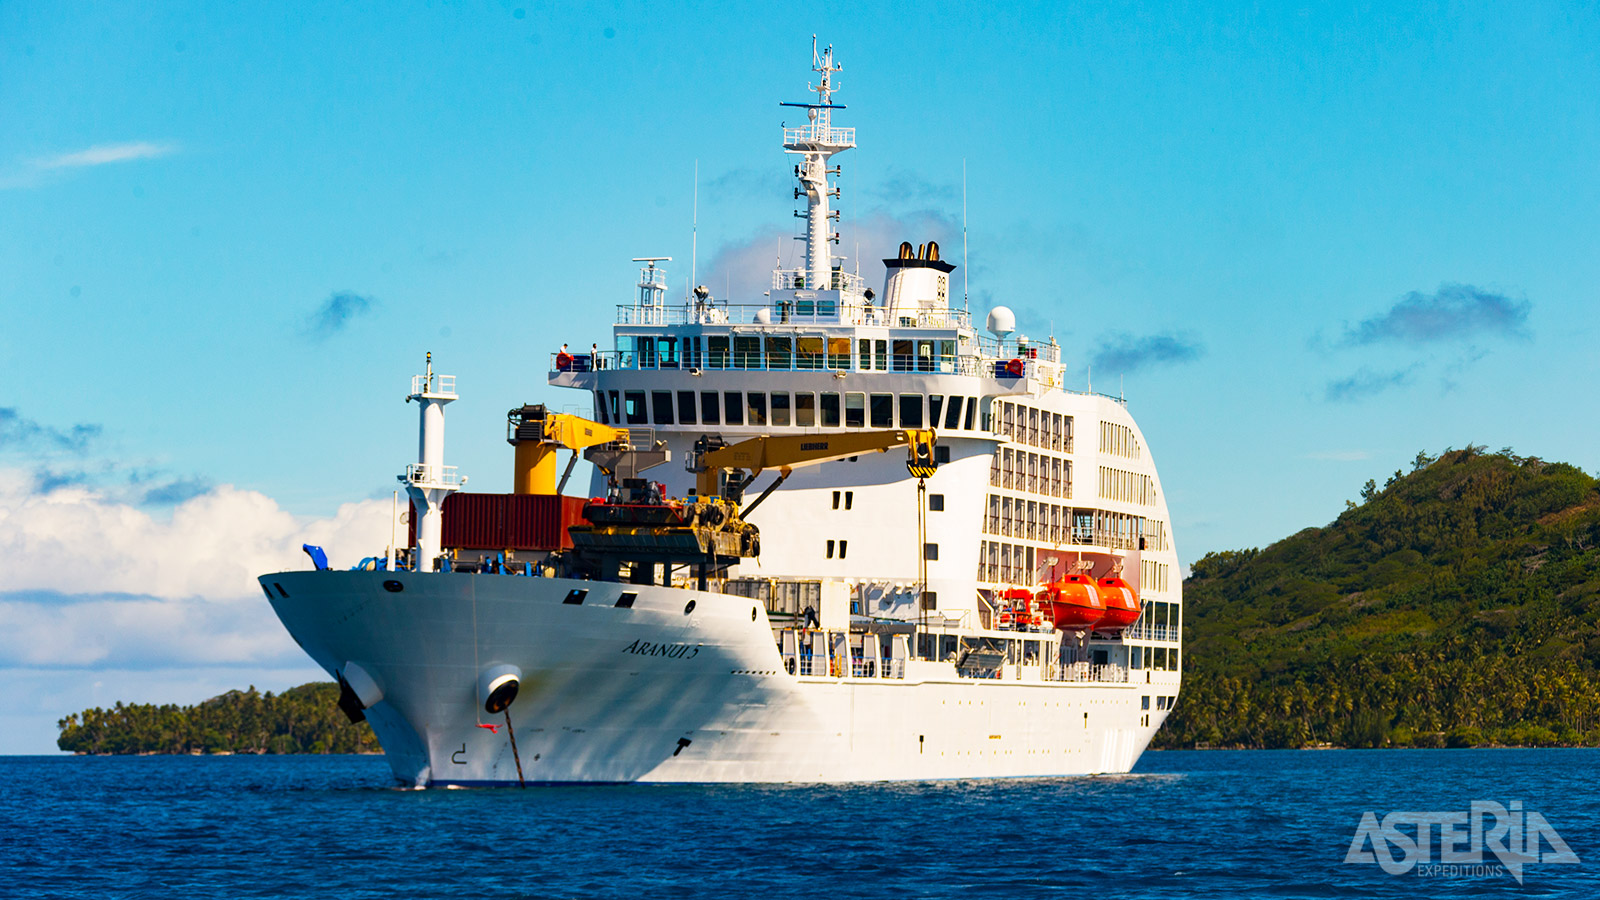 Naast cruiseschip doet de Aranui 5 ook dienst als bevoorradingsschip tussen de verschillende eilanden